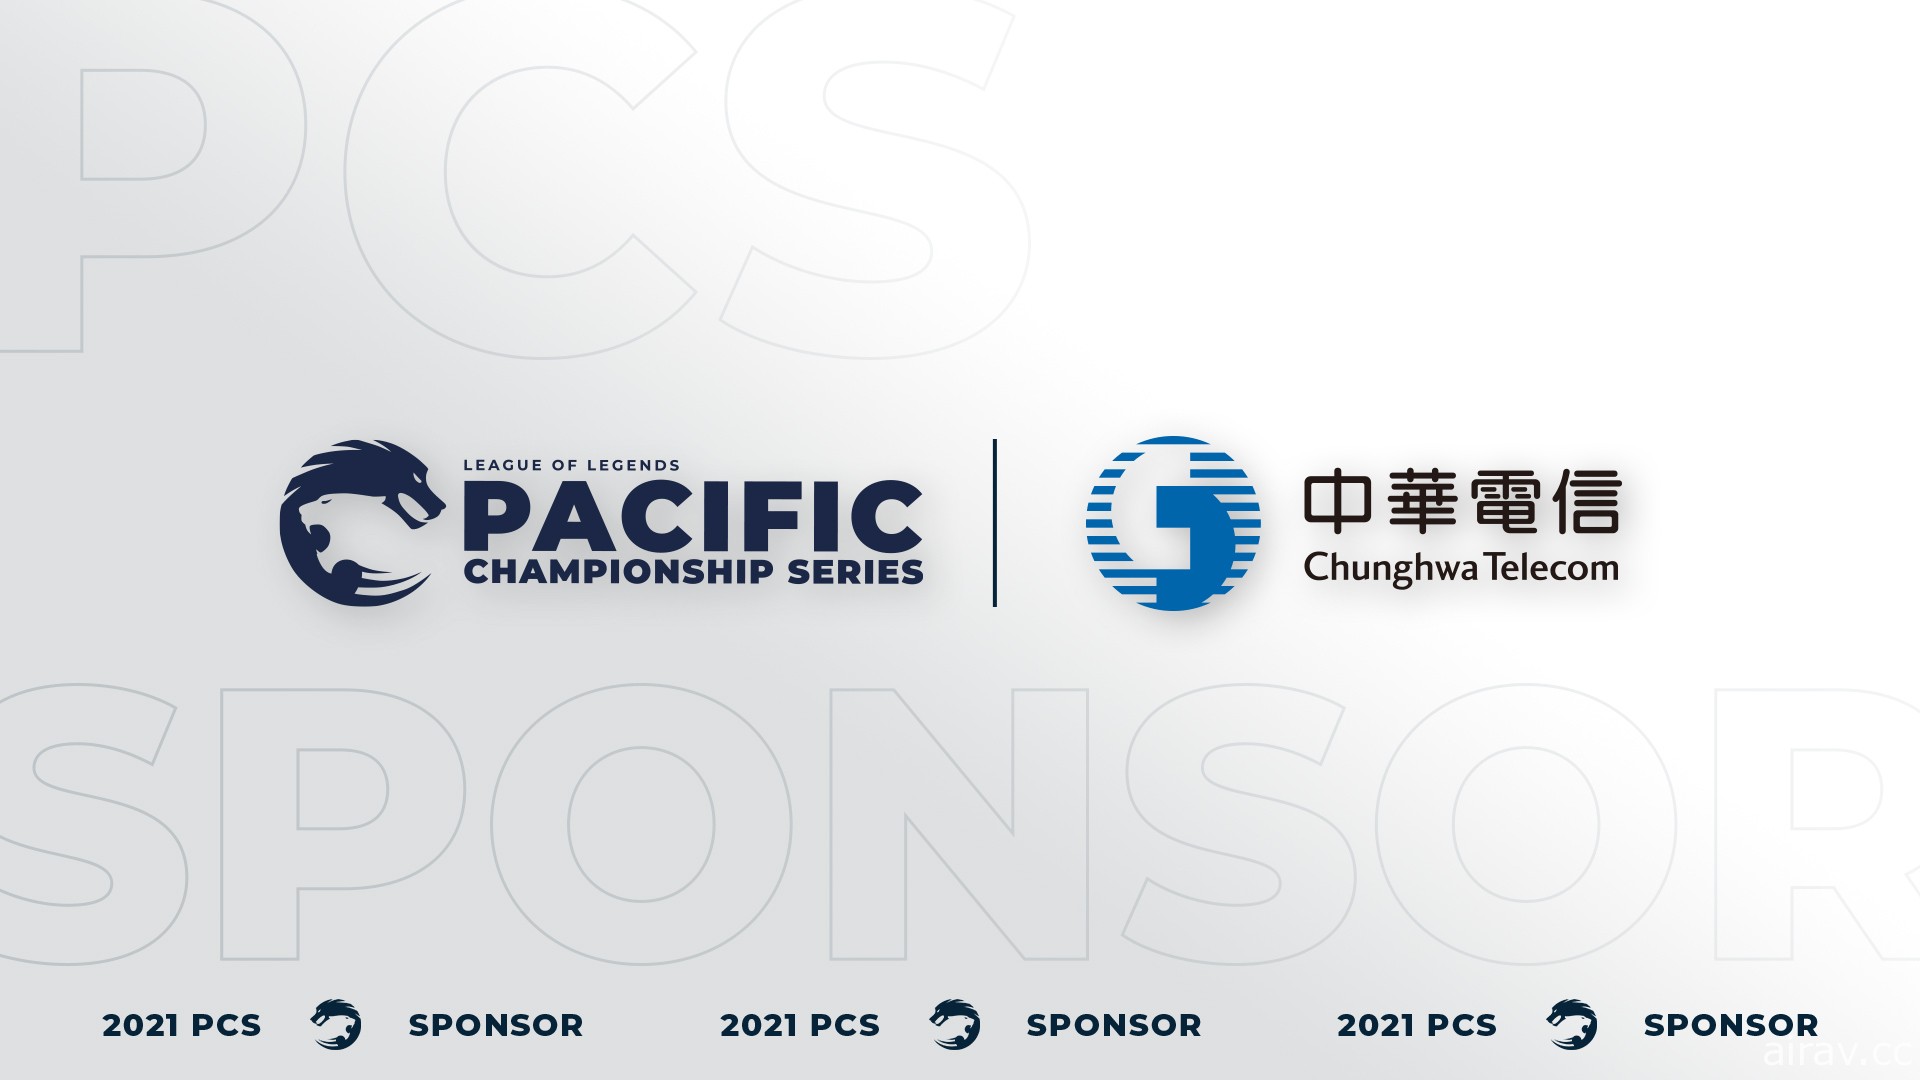 中華電信成為《英雄聯盟》PCS 太平洋職業聯賽新合作夥伴